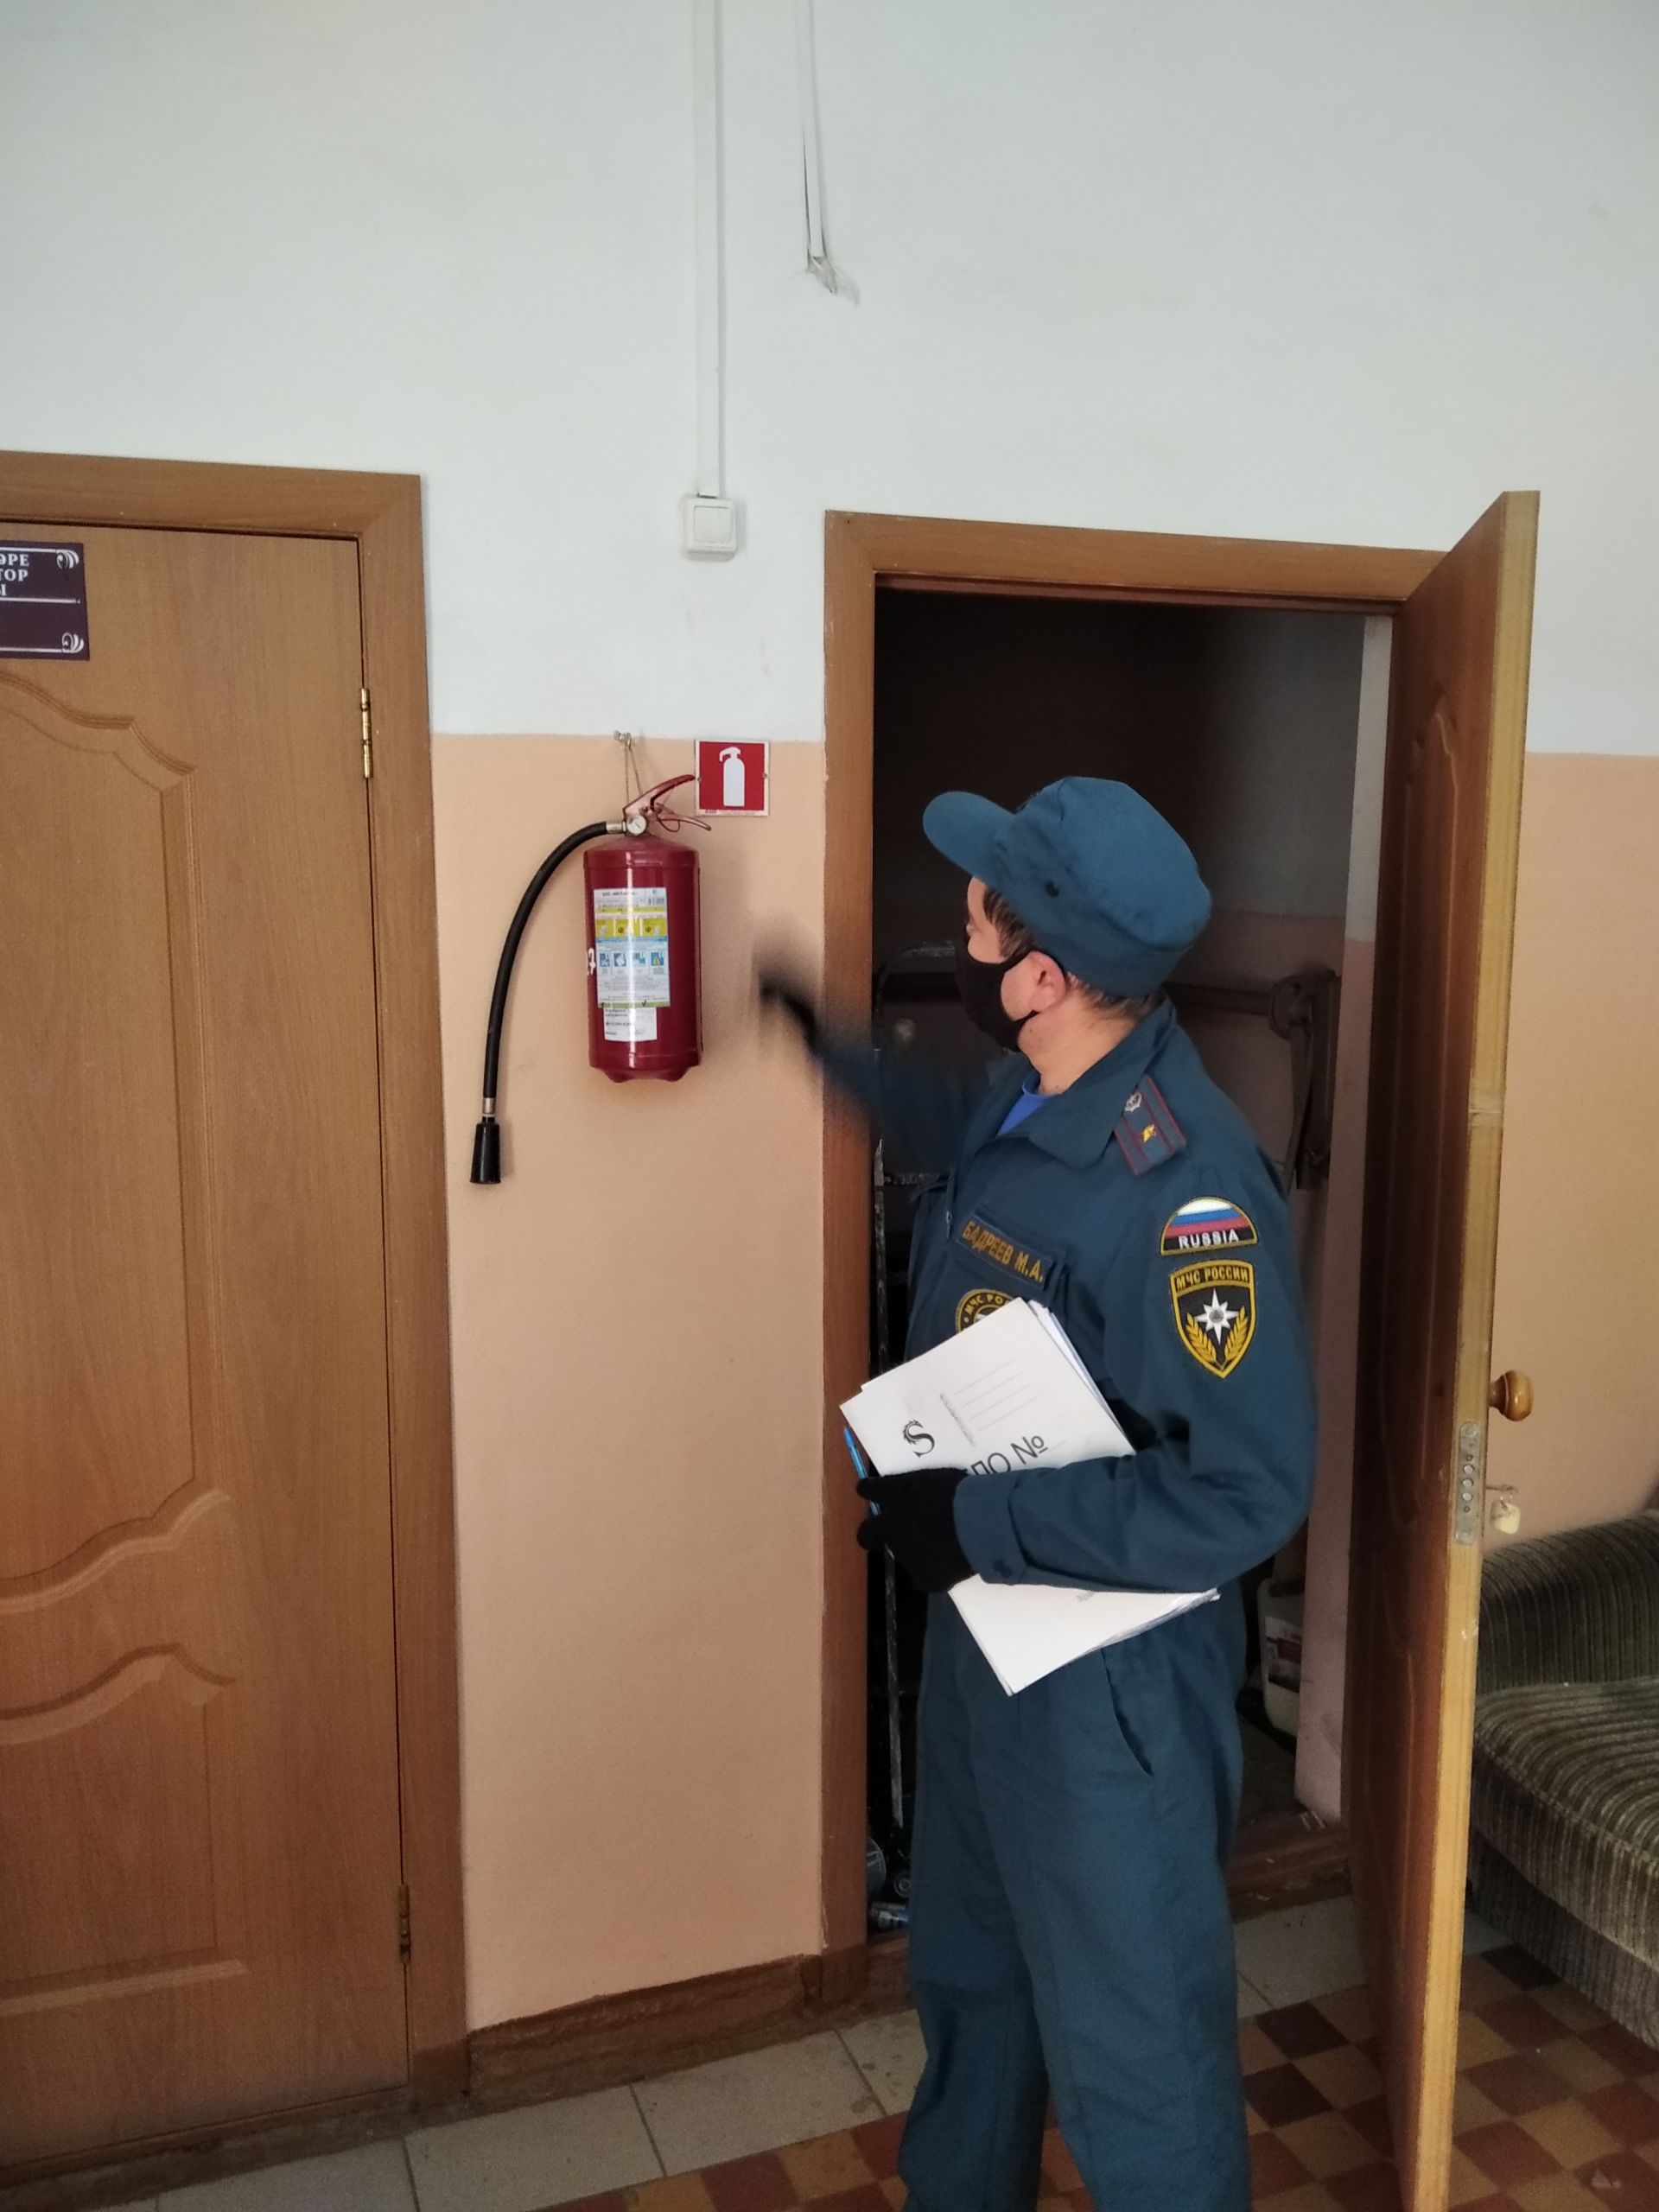 Проведено профилактическое обследование объектов выборов и обучение мерам пожарной безопасности членов избирательных комиссий